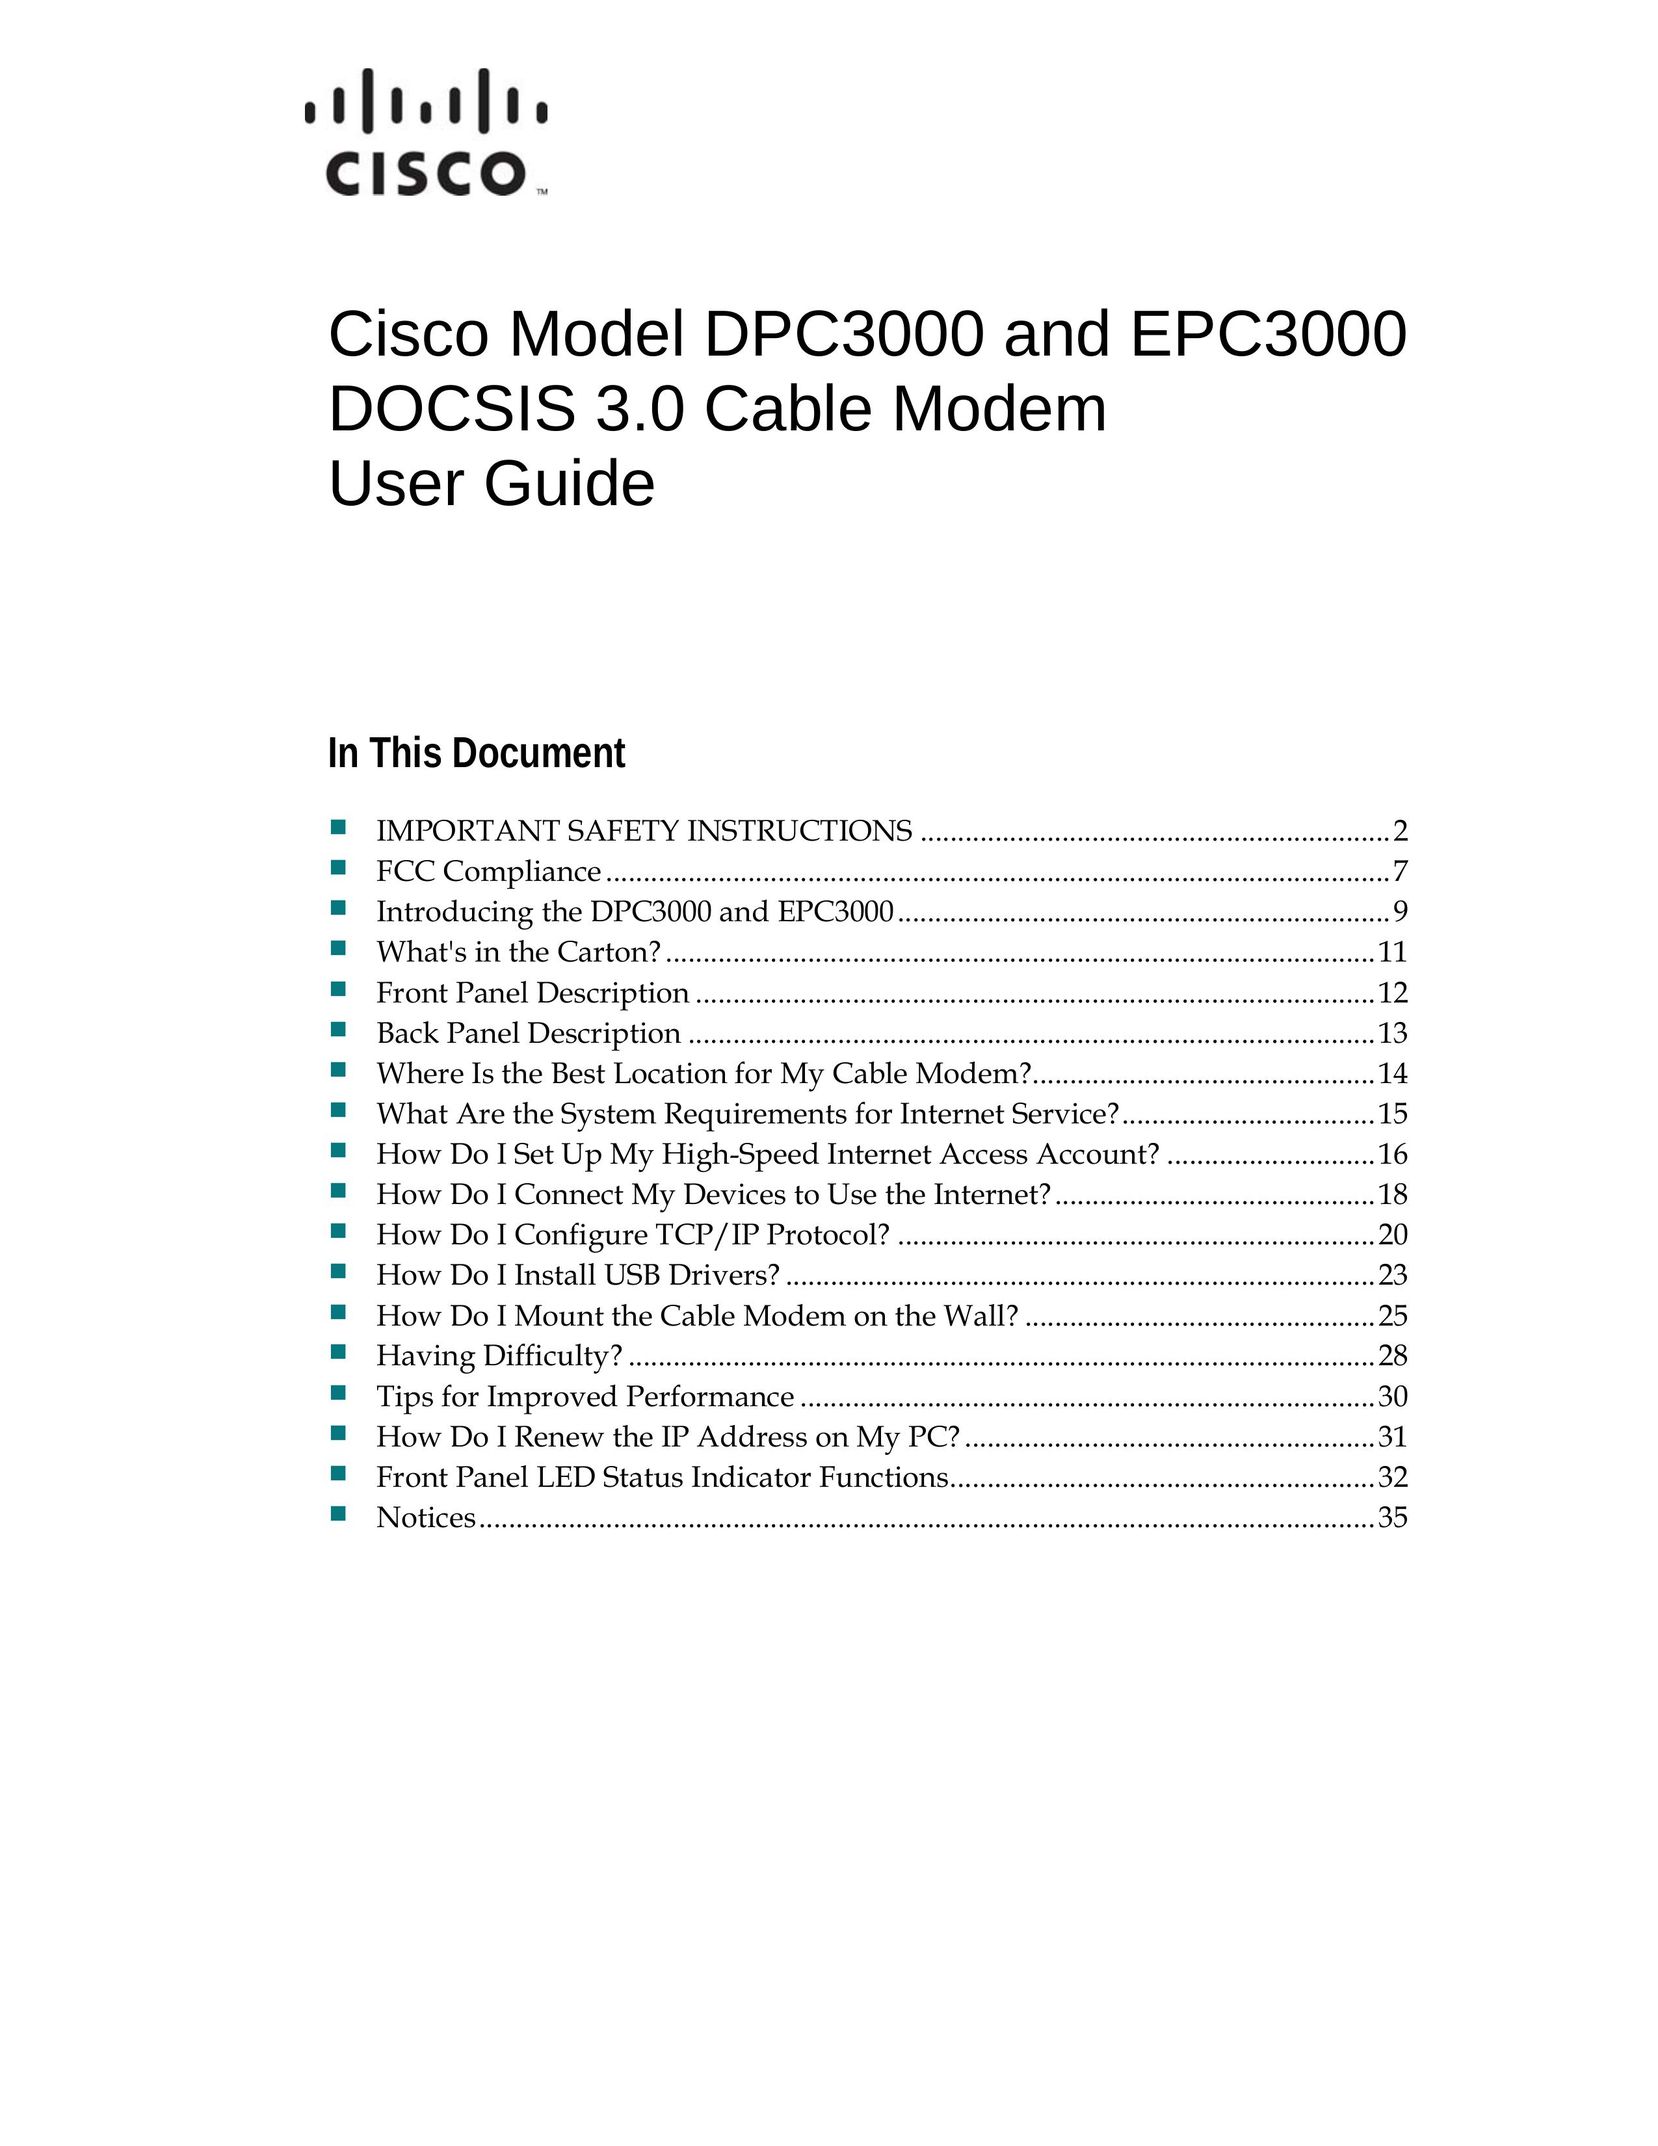 Cisco Systems DPC3000 Modem User Manual